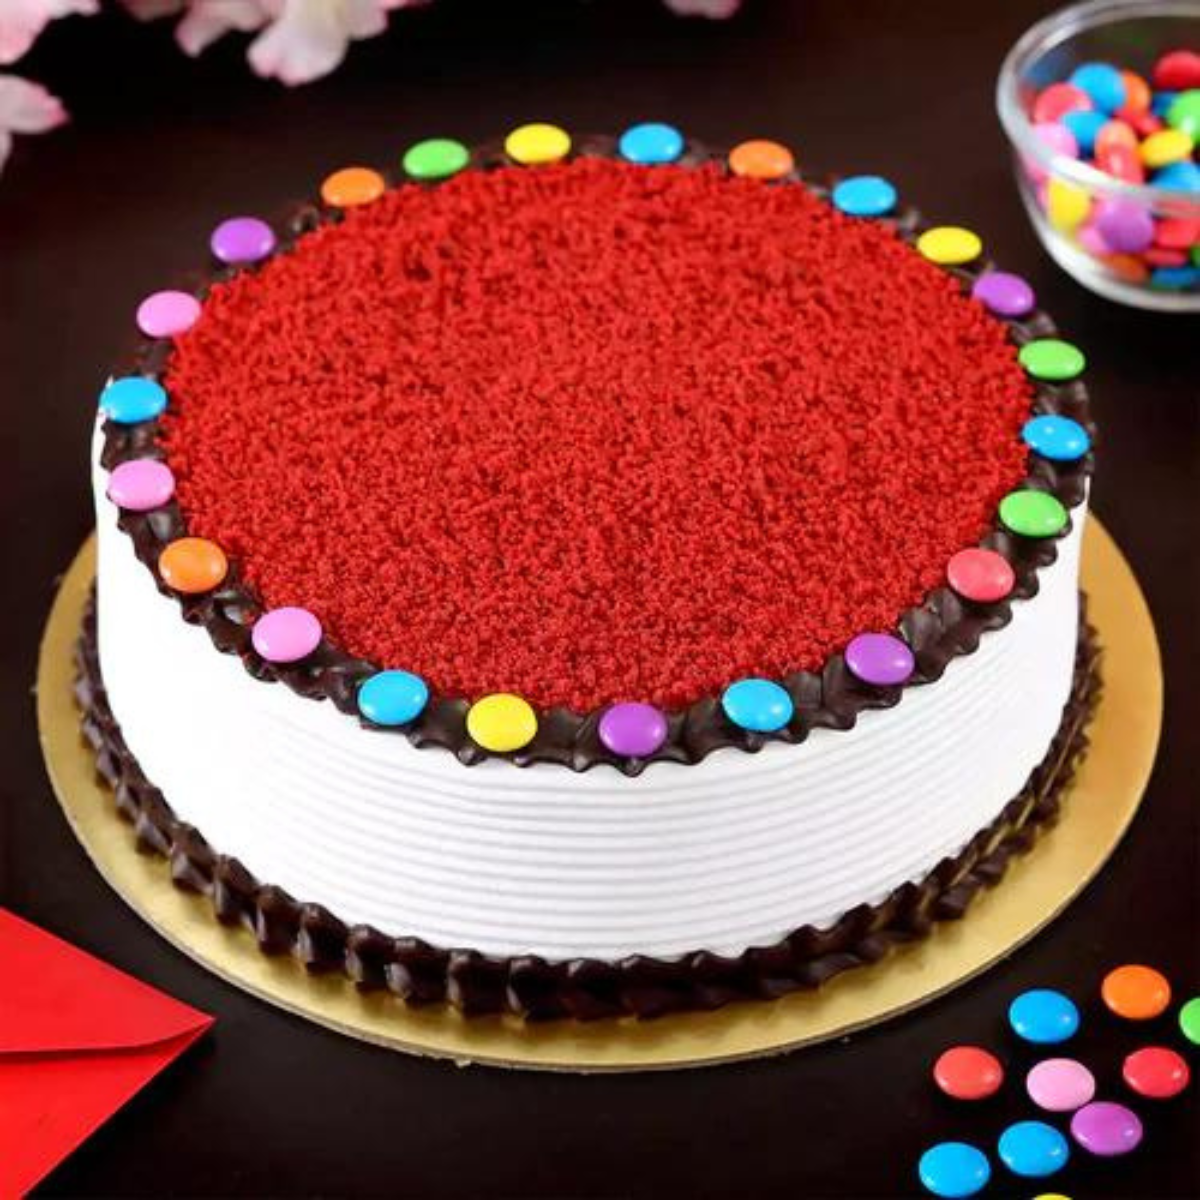 Red Velvet Cake with Gems-1